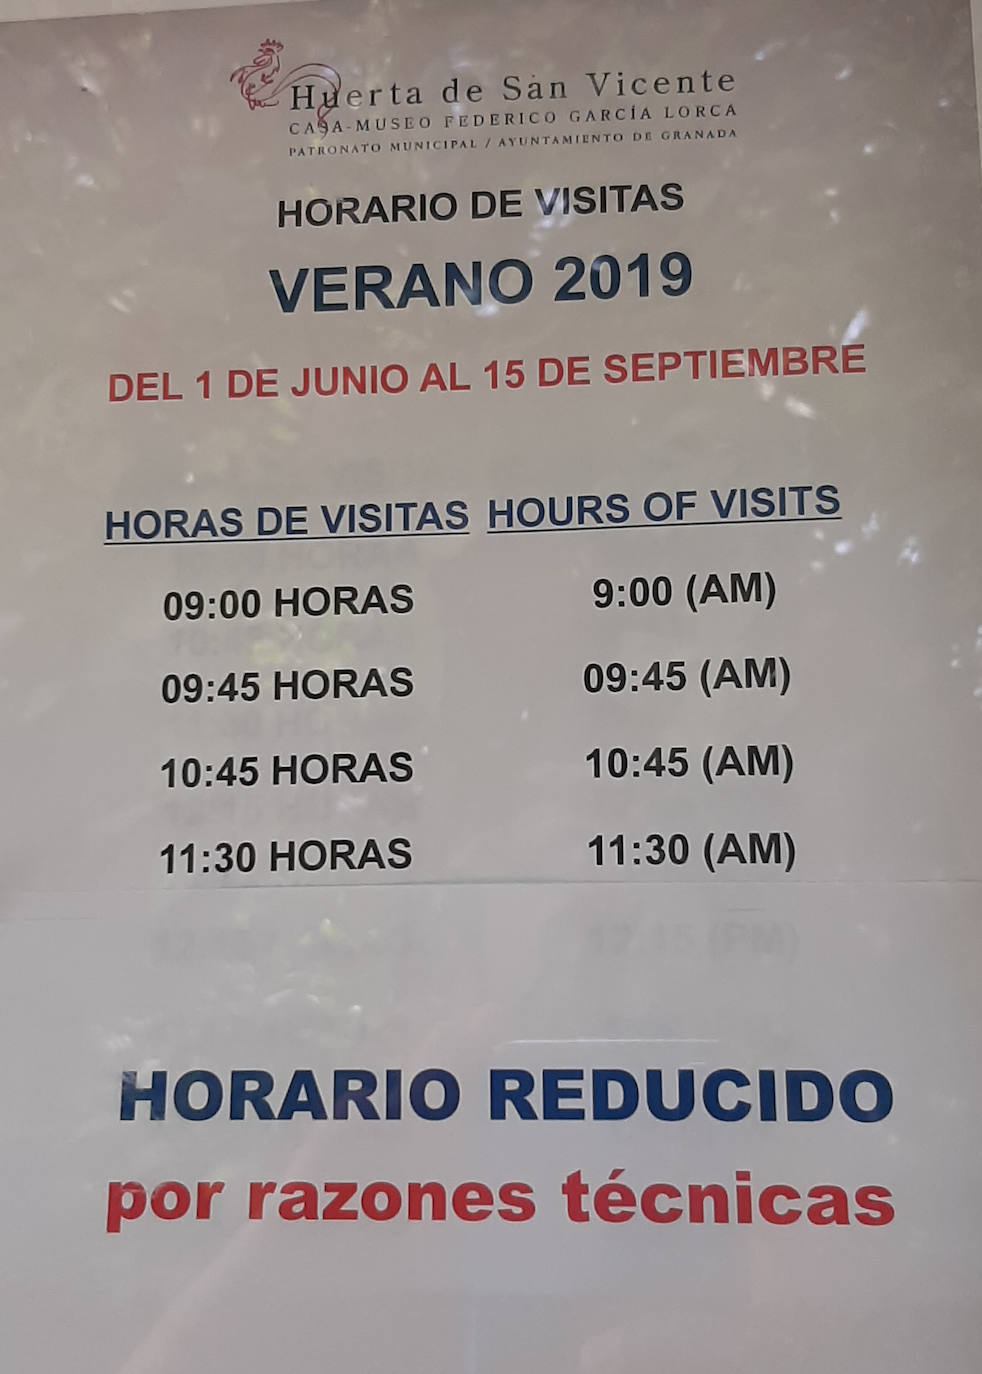 Cartel que informa del horario reducido de verano «por razones técnicas».